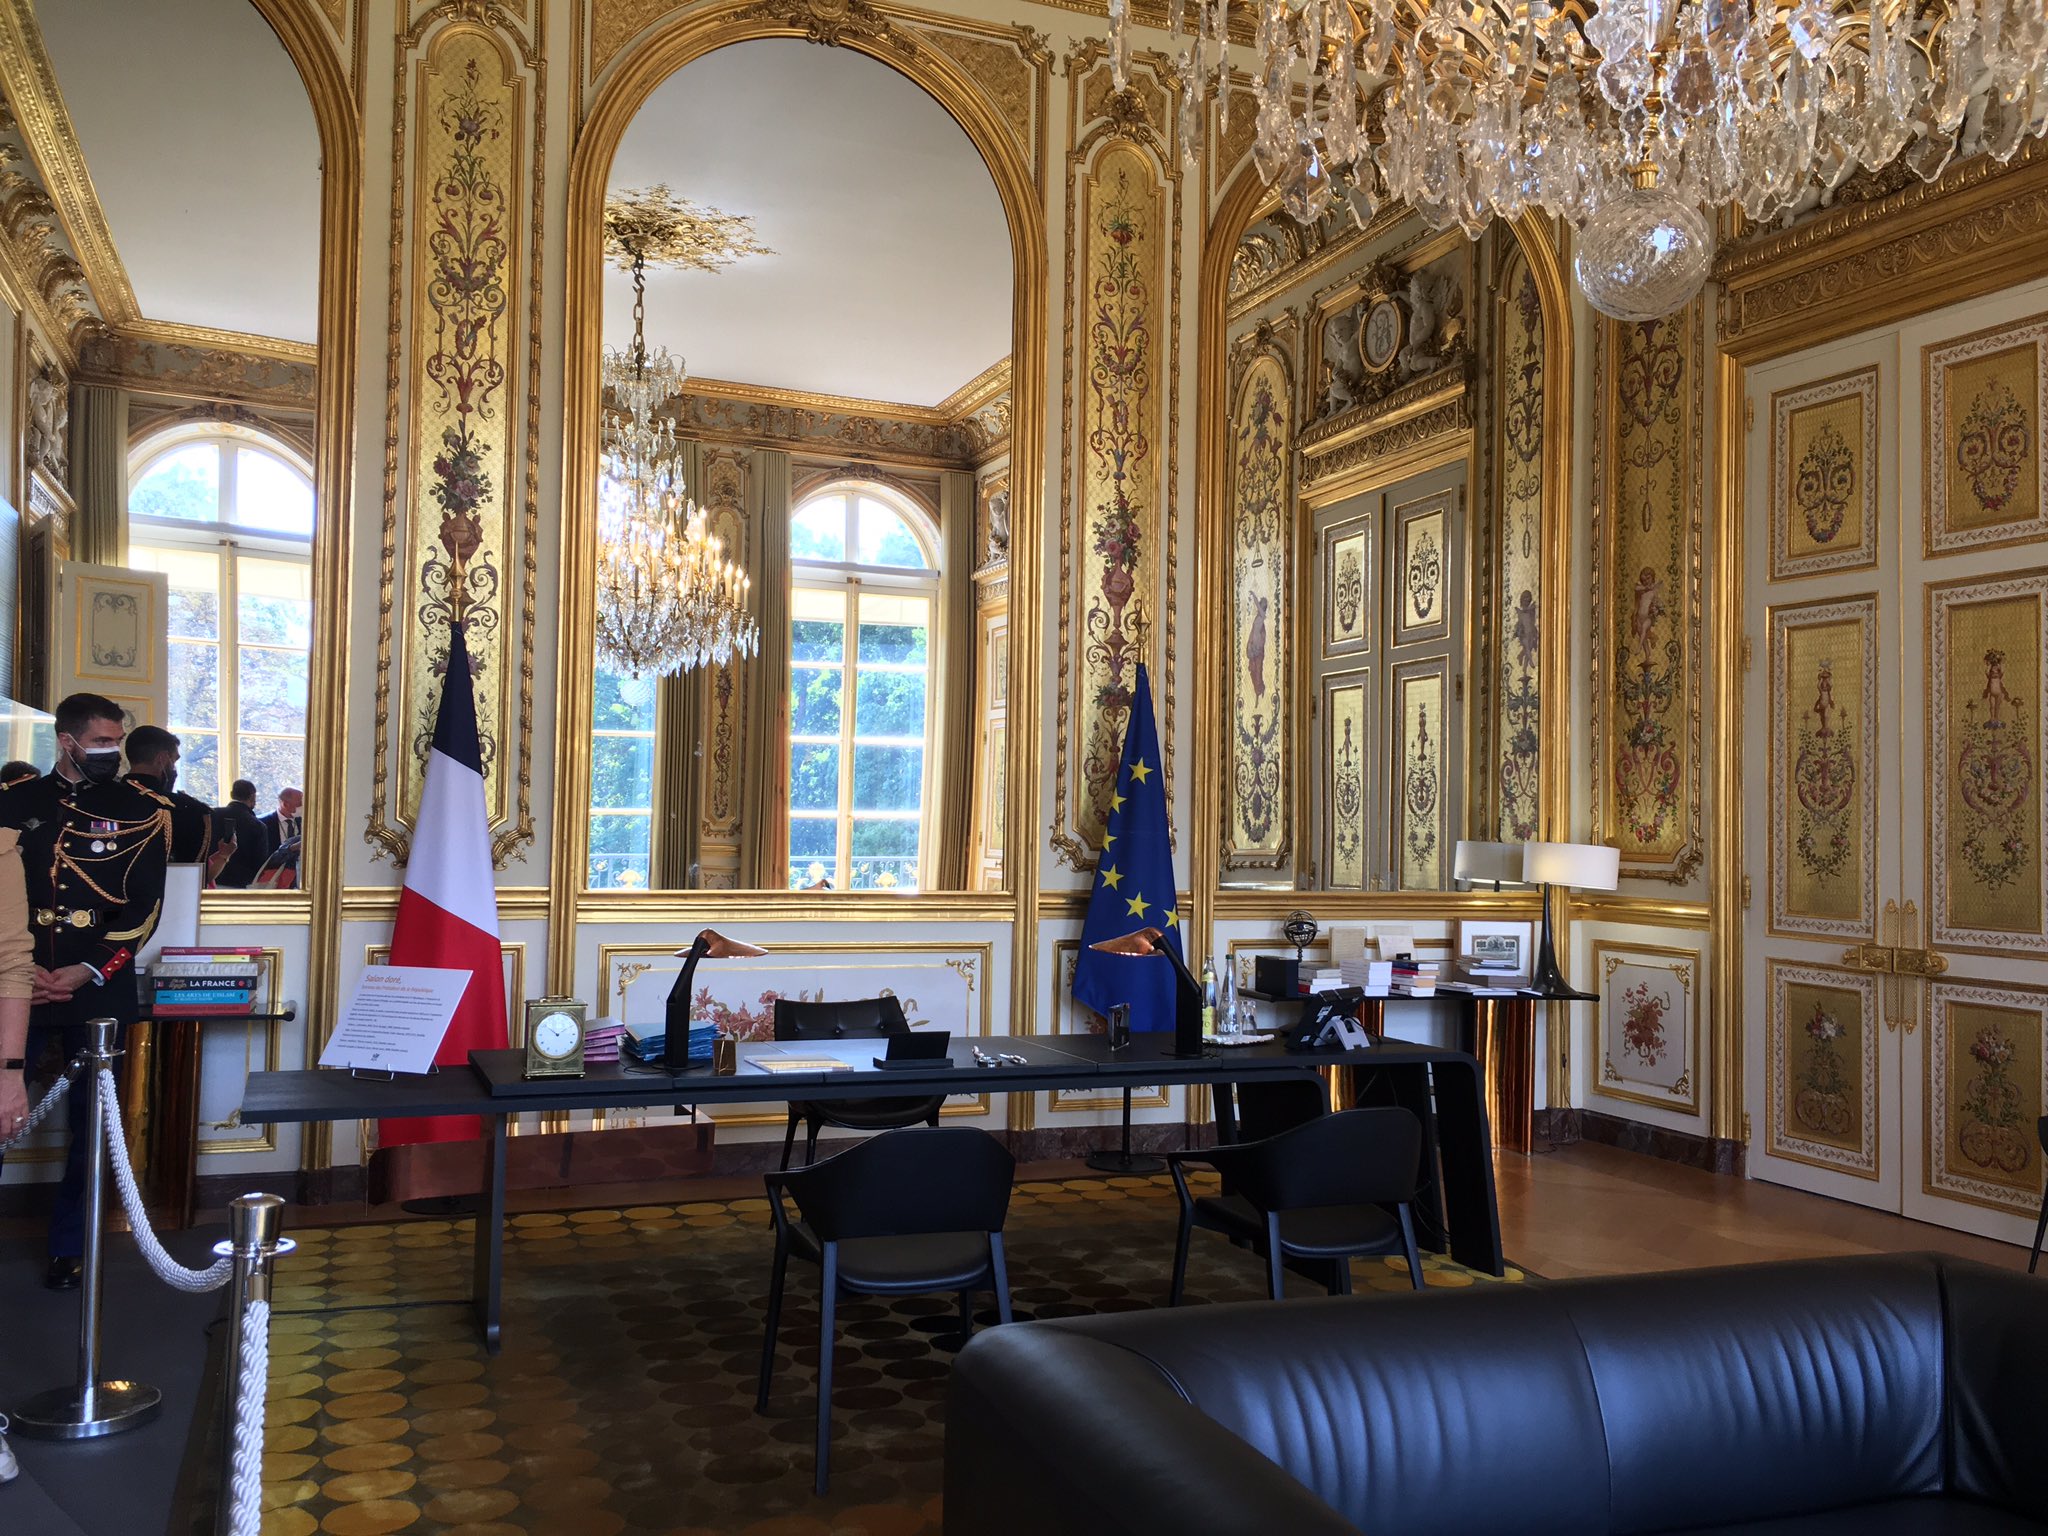 もとでい 今日はフランスマクロン 大統領が執務を行う建物 エリゼ宮 の無料見学会 シャンゼリゼという地名の エリゼ 分はこの建物から来ています そして各国でもらった贈り物の中で燦然と輝く ワンピースの絵w T Co Ucuzfzqcfh Twitter